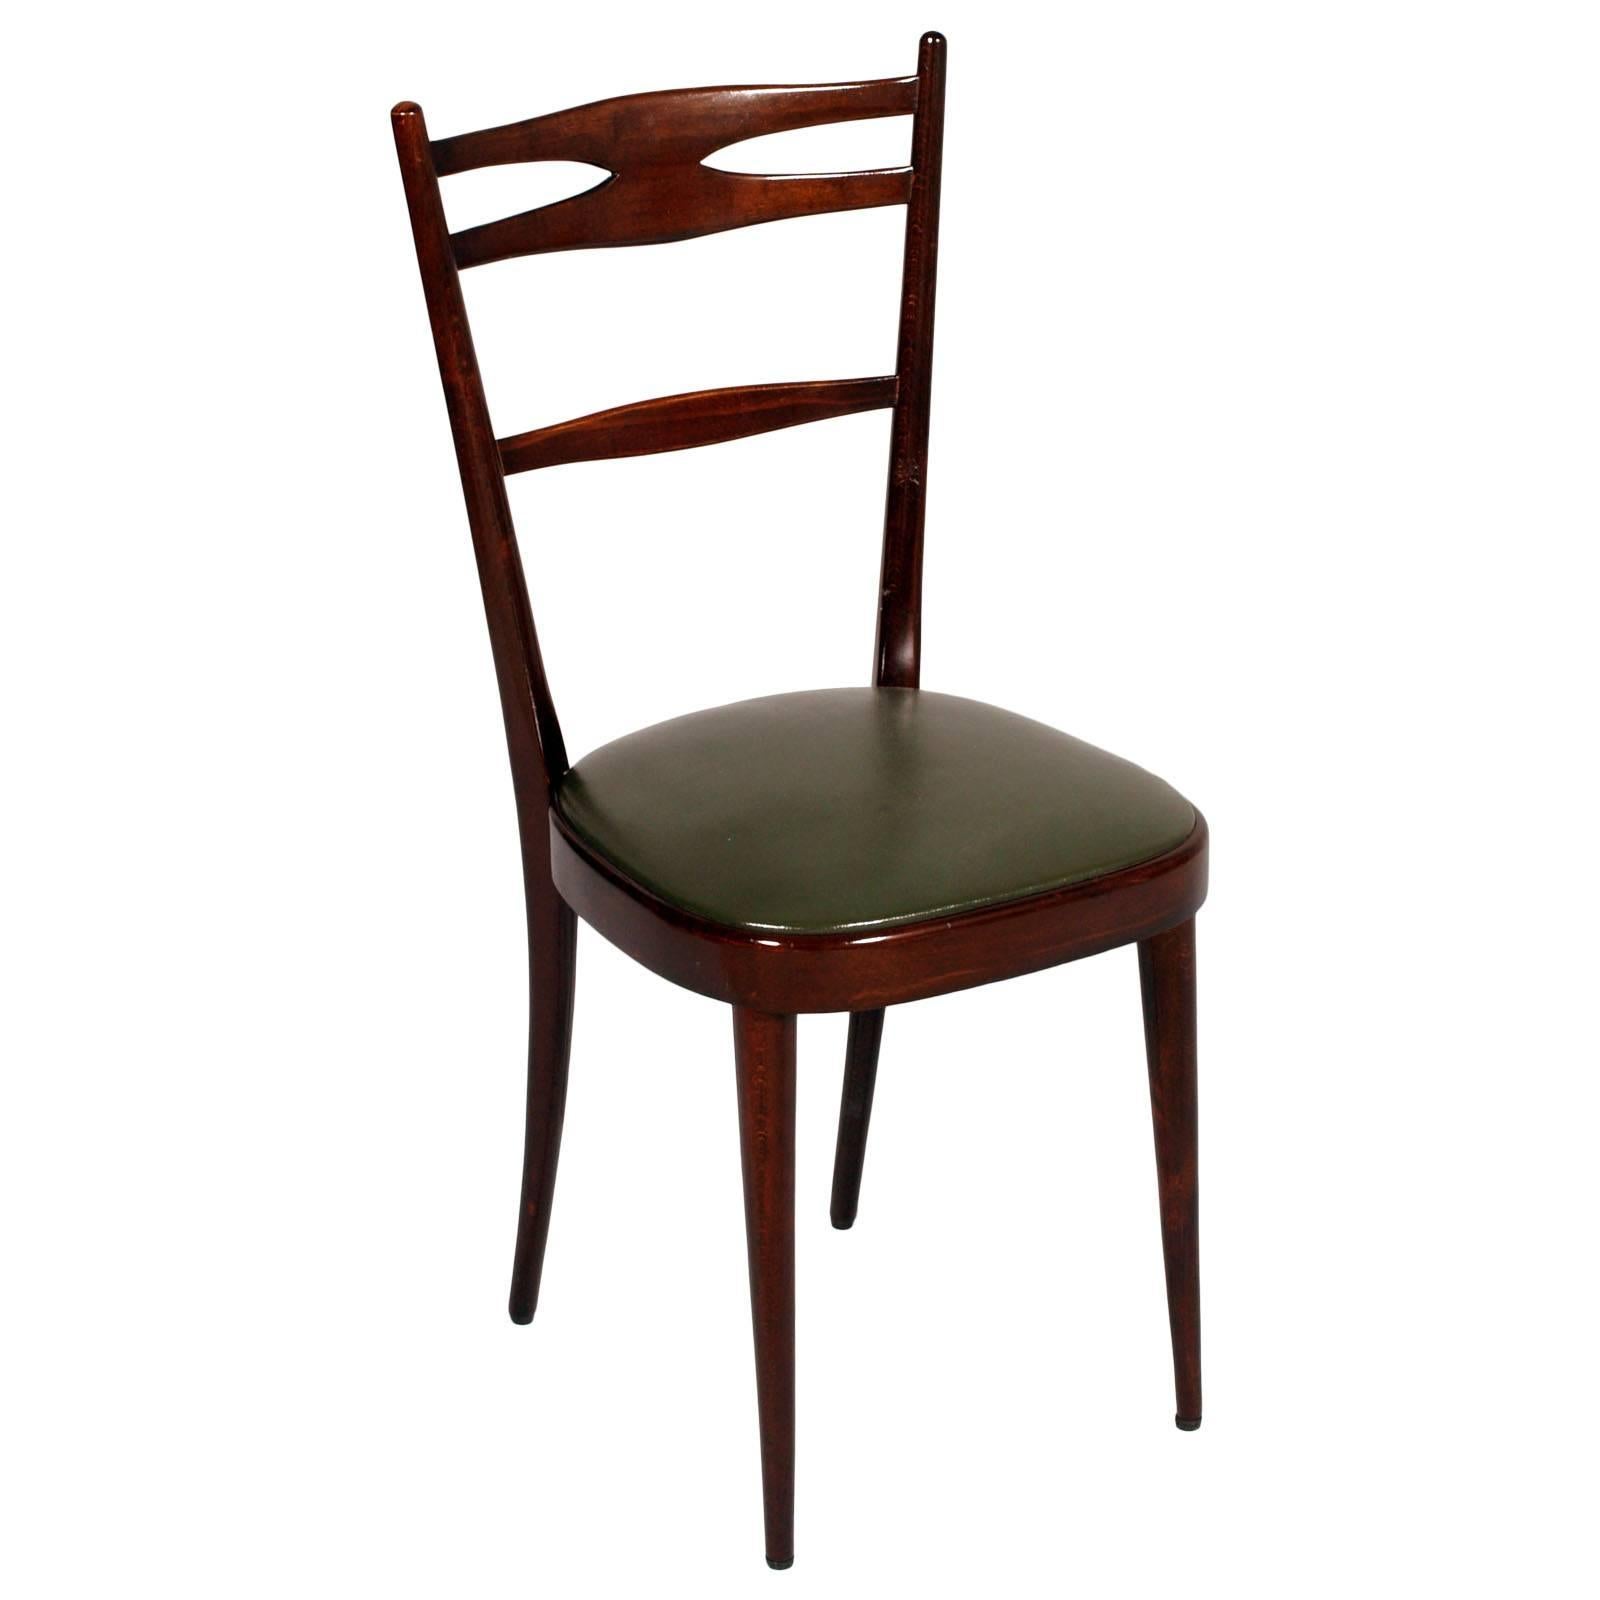 Elegantes chaises d'appoint Carlo de Carli attribuées en noyer brun massif, avec un excellent revêtement d'origine en cuir vert foncé. Restauré et poli à la cire

Dimensions en cm : H 93/47, L 44, P 48.